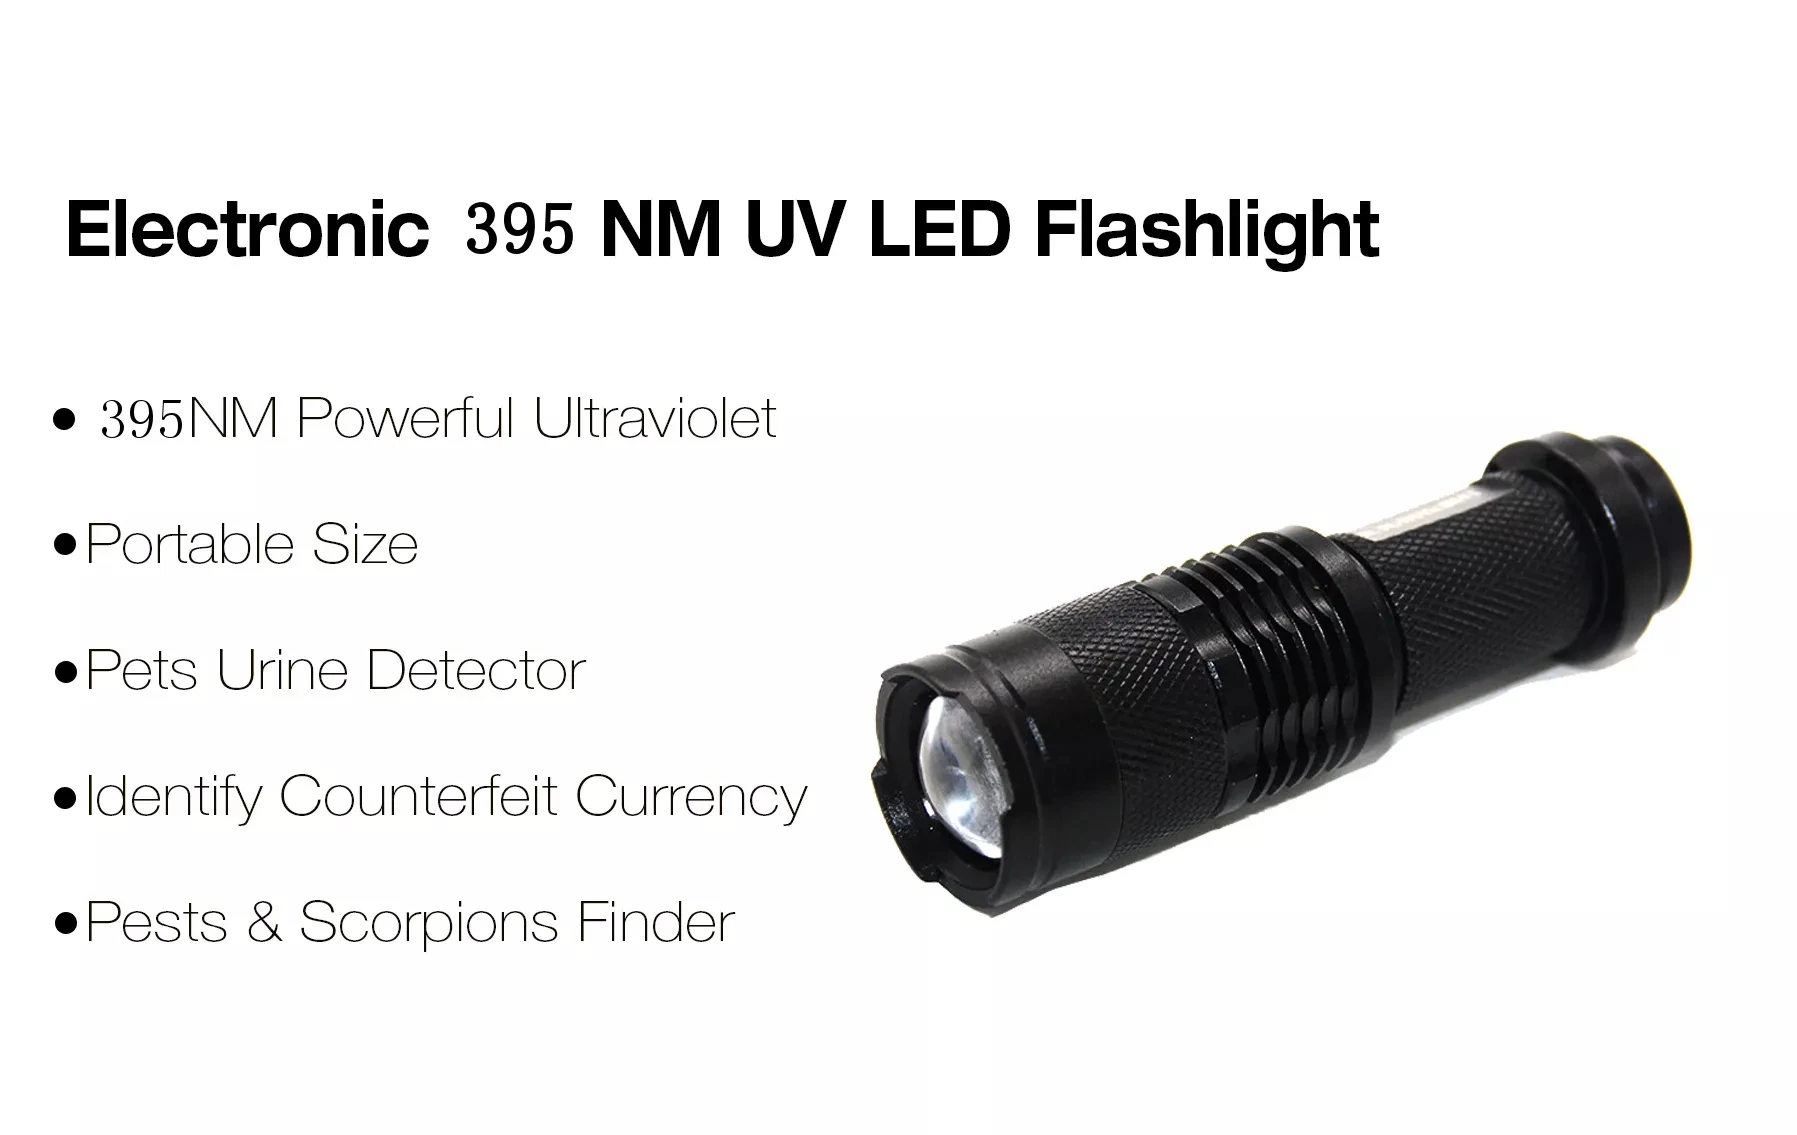 УФ-светильник-вспышка, фиолетовый светильник с функцией масштабирования, мини-УФ-черный светильник, детектор пятен в моче для домашних животных, с функцией скорпиона, с батареей AA/14500